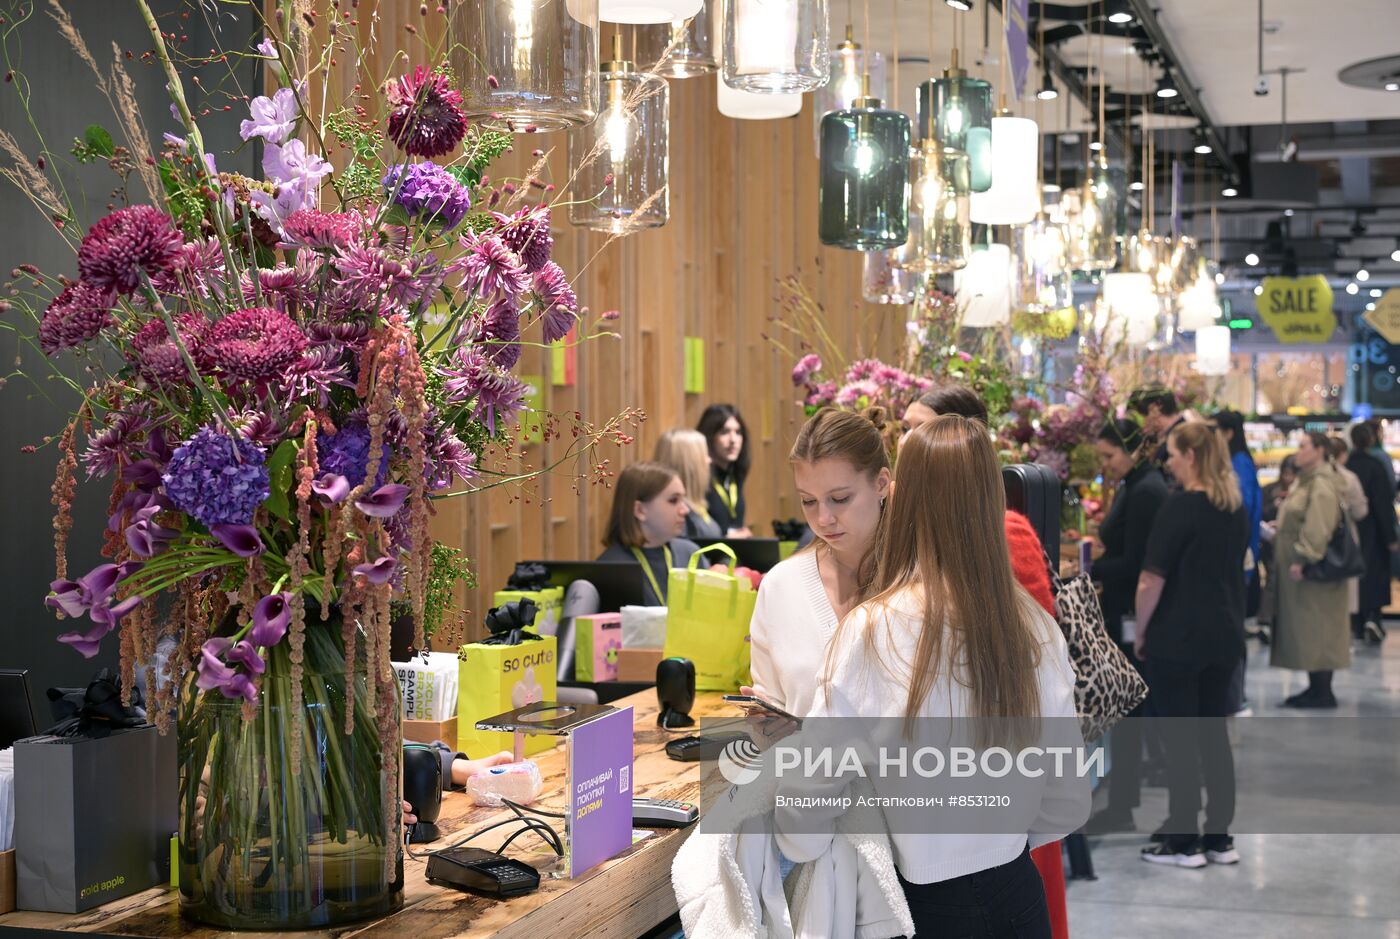 Продажа косметической продукции в Москве